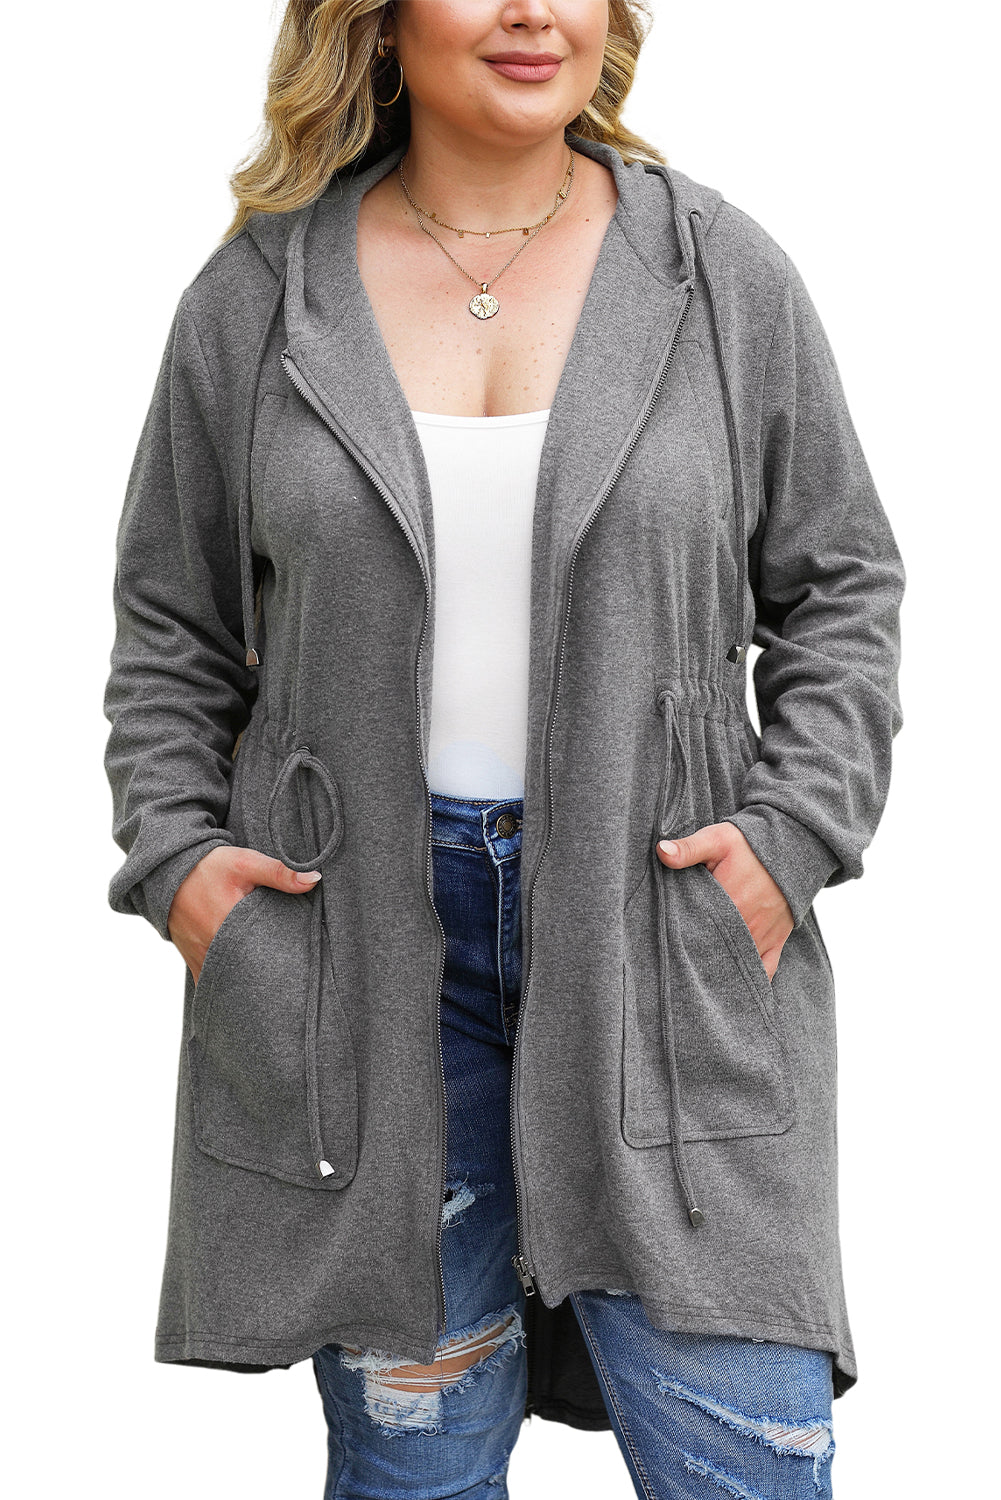 Veste à capuche haute et basse avec cordon de serrage de grande taille grise